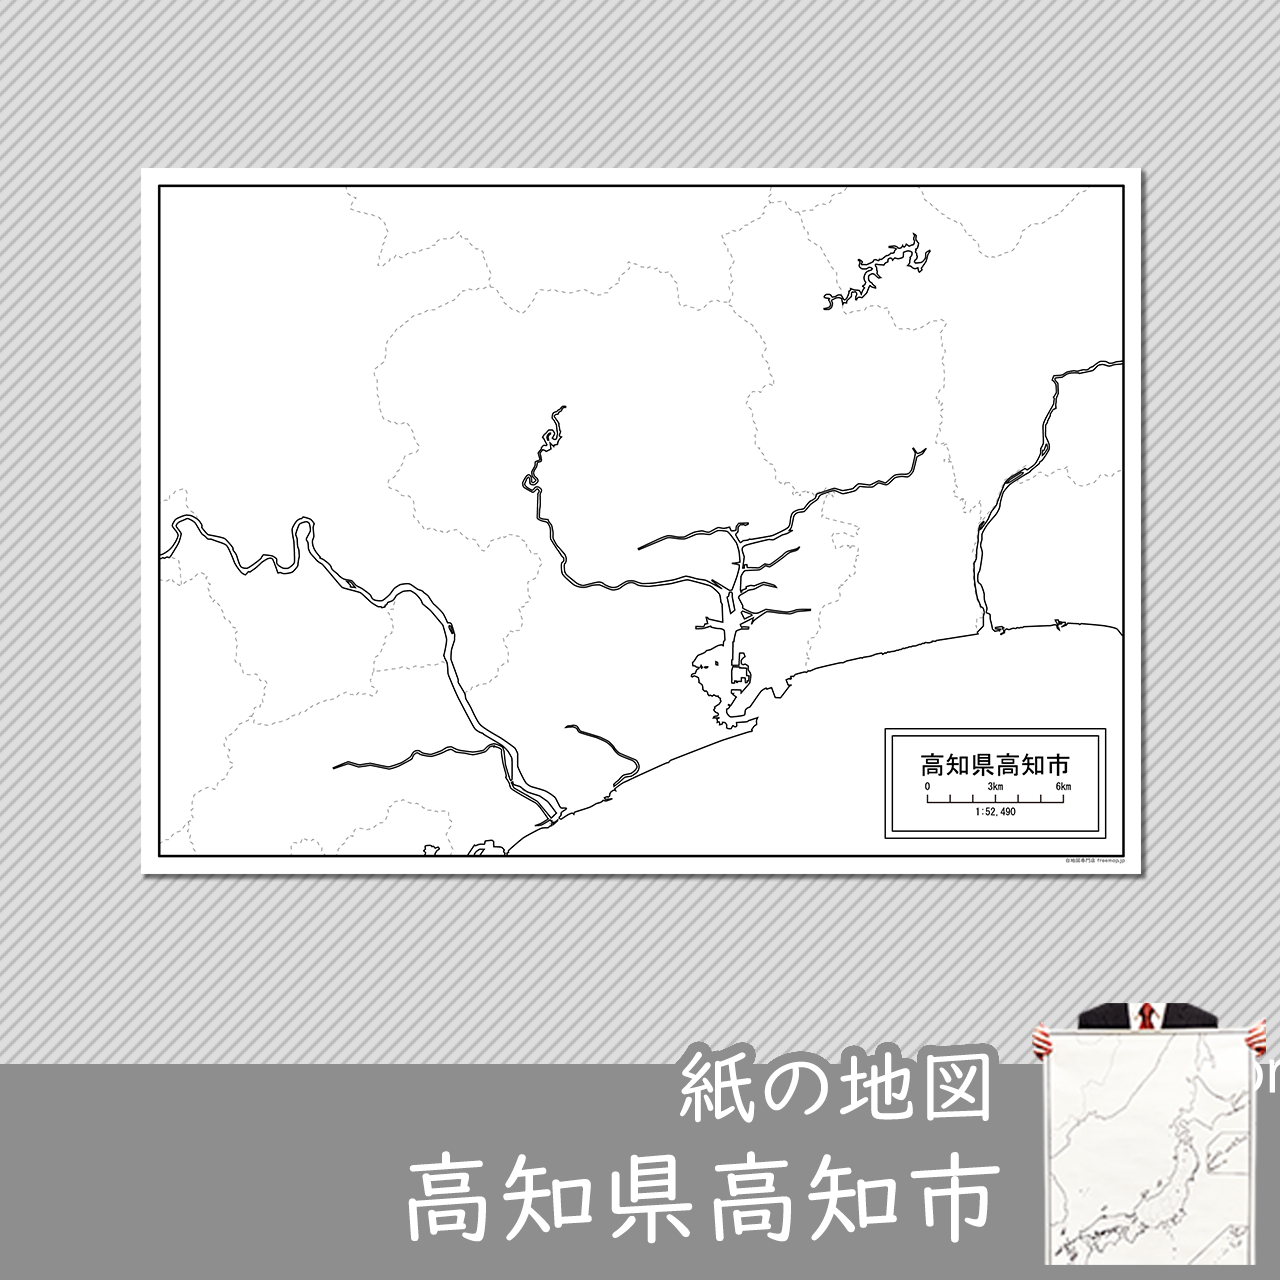 高知市の紙の白地図のサムネイル